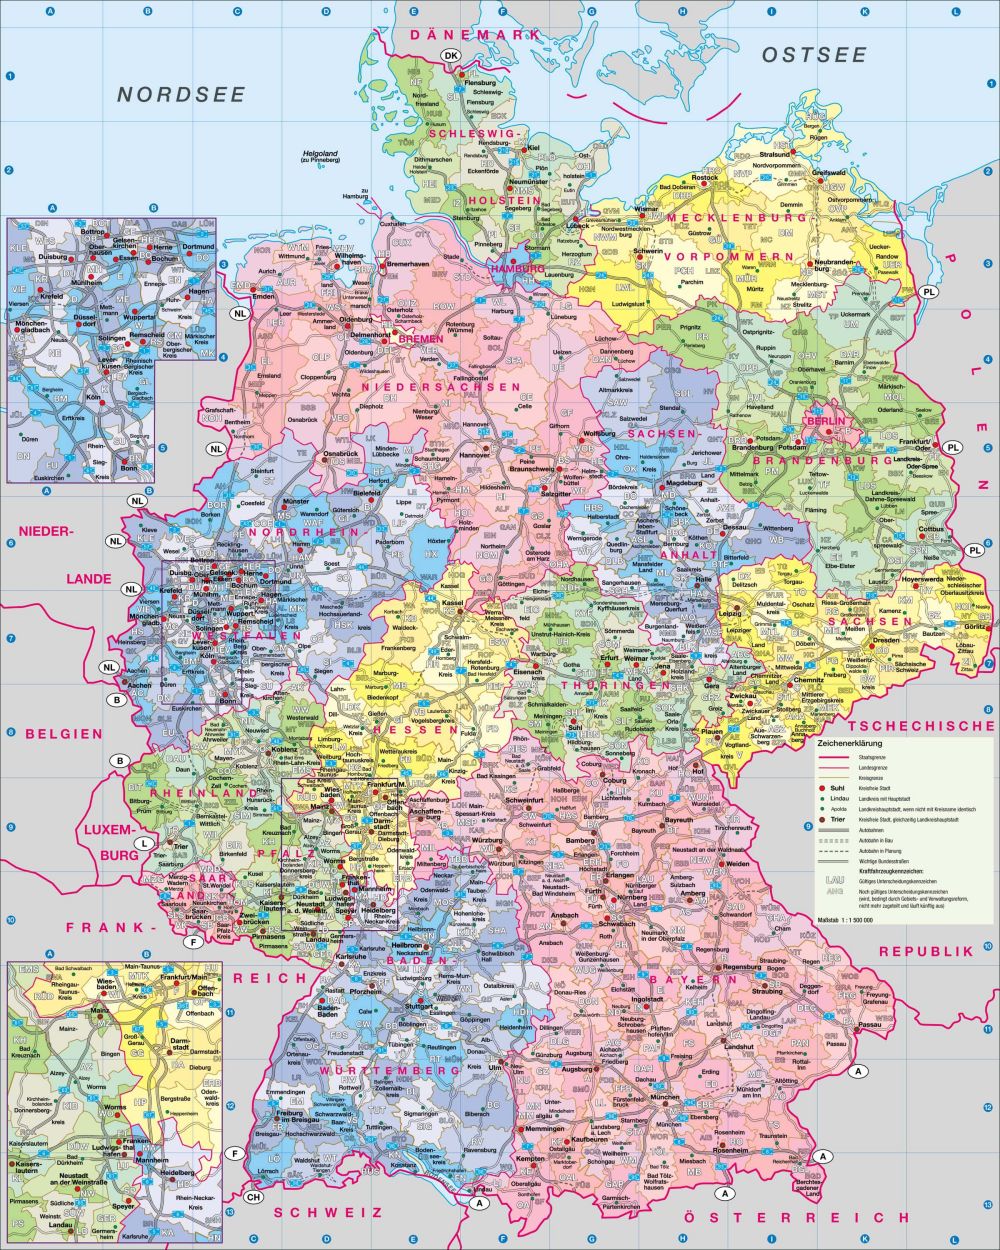 Hãy khám phá bản đồ đất nước Đức năm 2024 - một quốc gia phát triển vượt bậc với kinh tế mạnh mẽ và công nghệ tiên tiến. Từ thành phố Hamburg sôi động đến núi Zugspitze cao nhất Đức, mọi thứ đều rực rỡ và hấp dẫn với đất nước này.